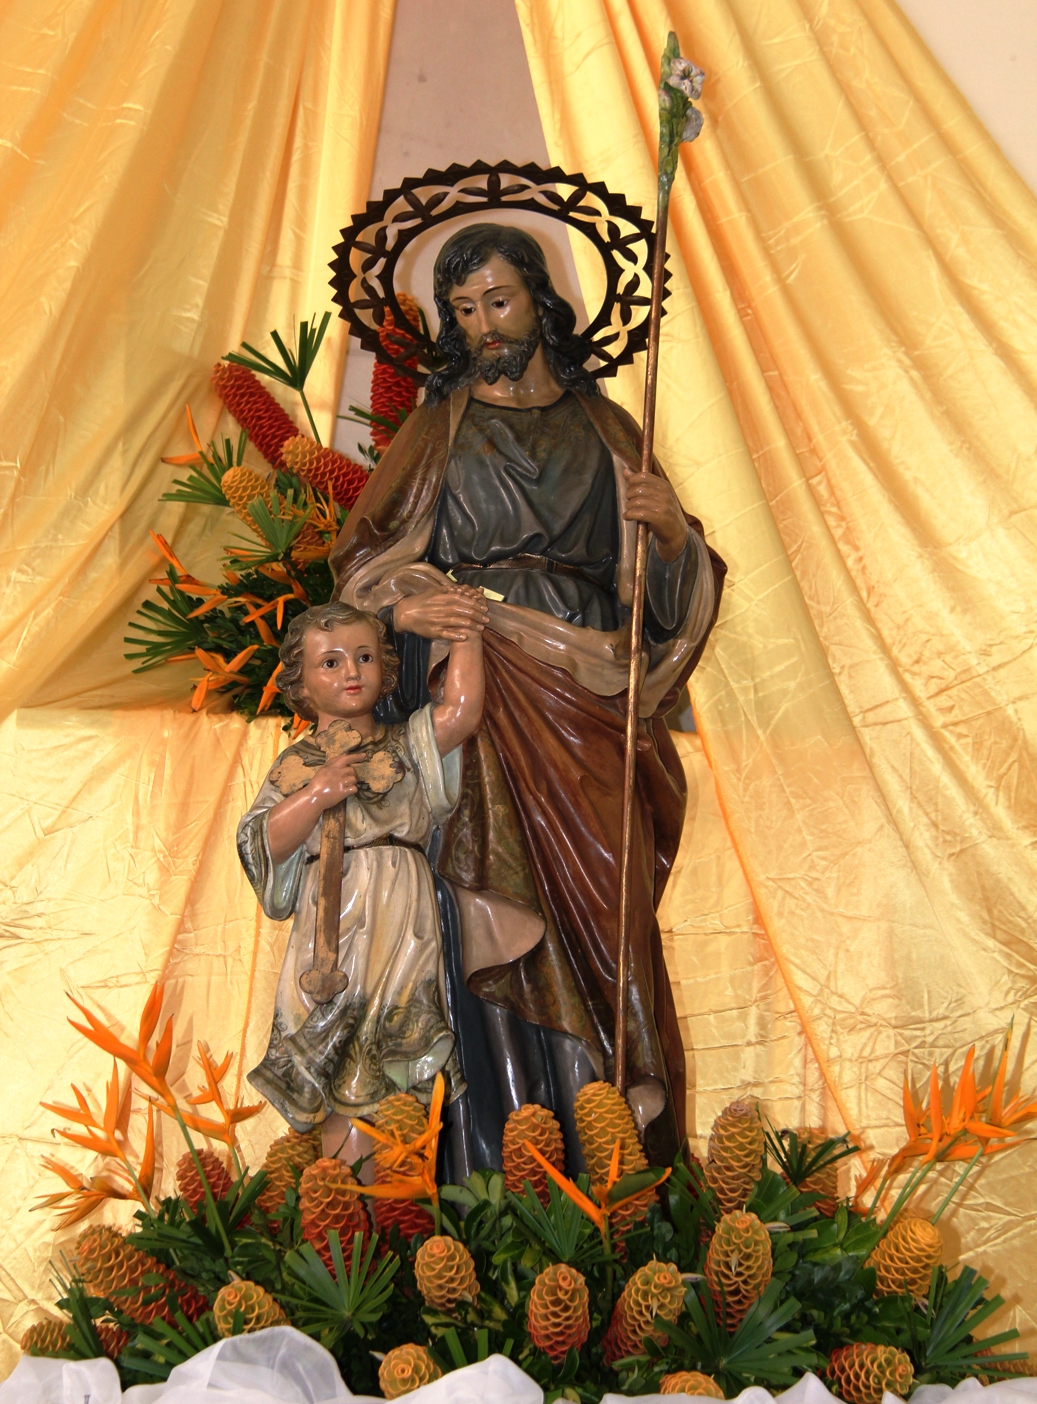 Statue des heiligen Josef in einer brasilianischen Pfarrei. © Kirche in Not